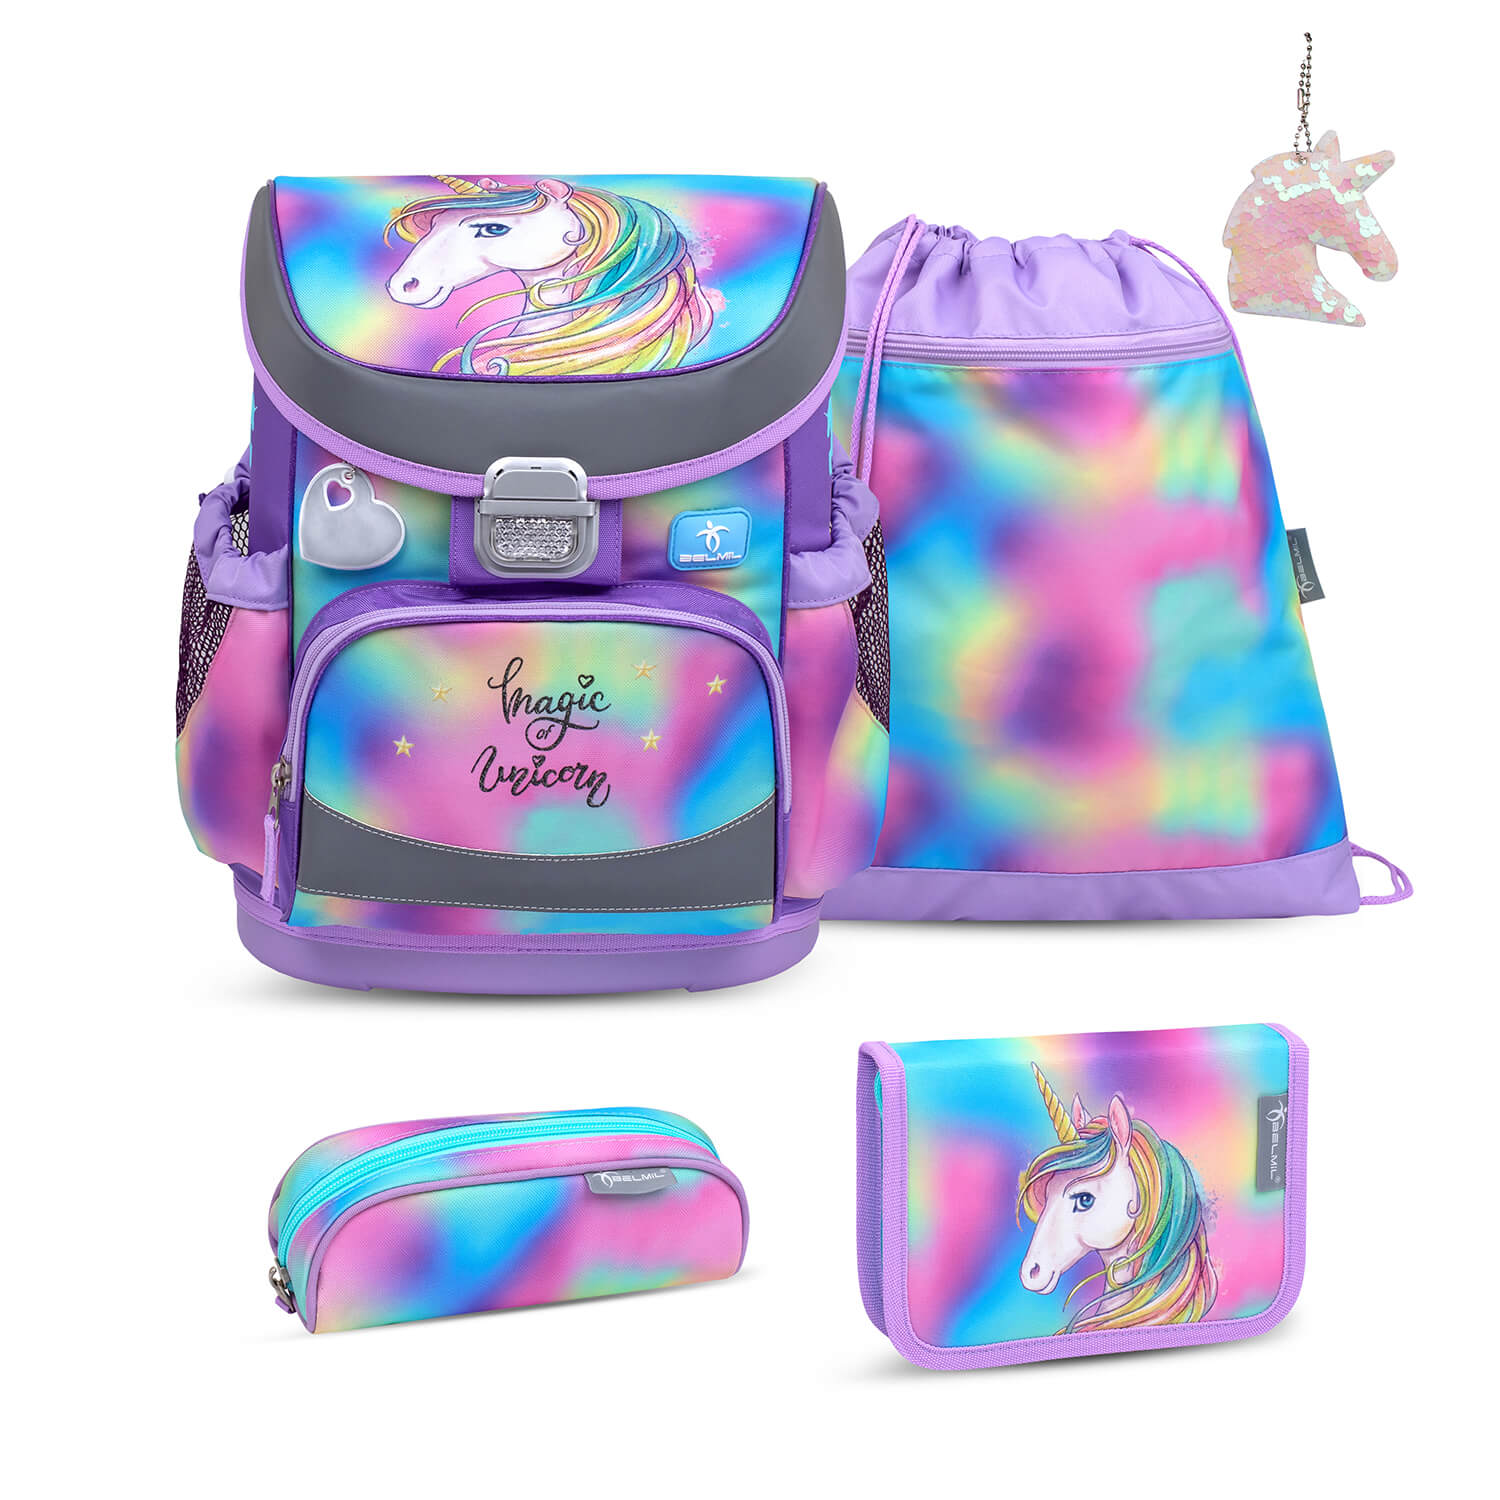 Mini-Fit Rainbow Color schoolbag set 5 pcs with GRATIS keychain